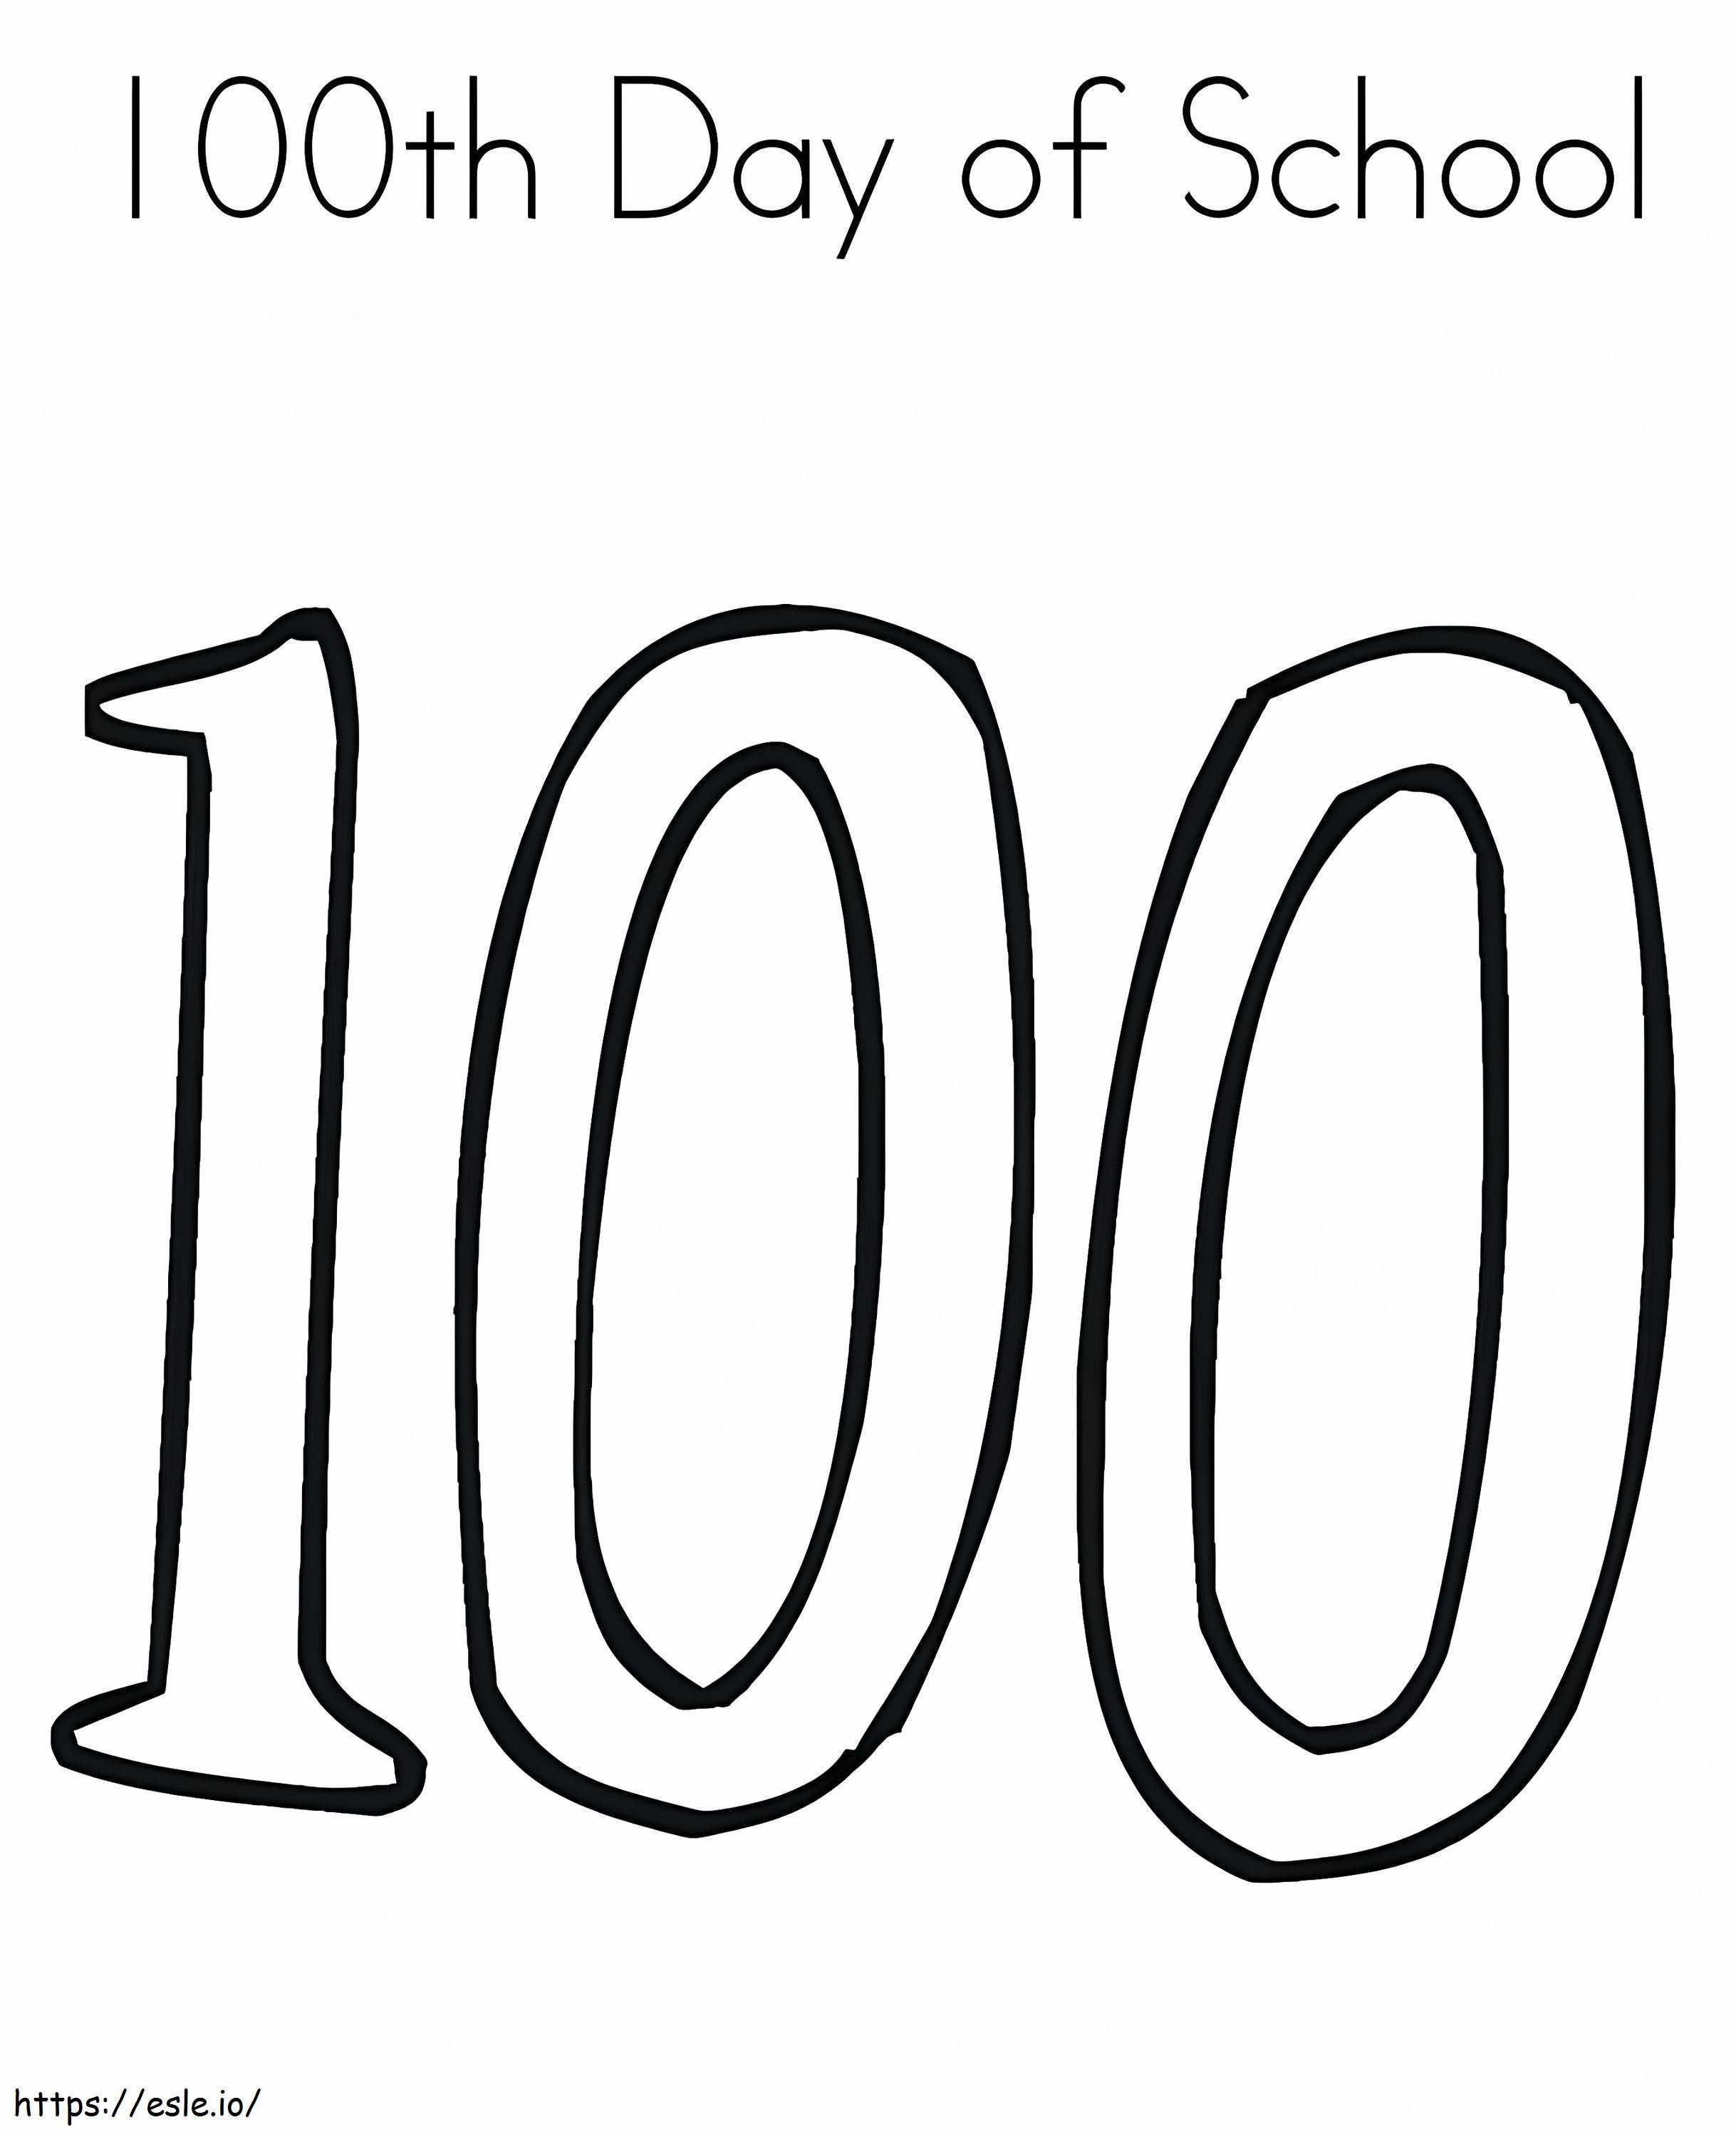 Coloriage Facile 100ème jour d'école à imprimer dessin